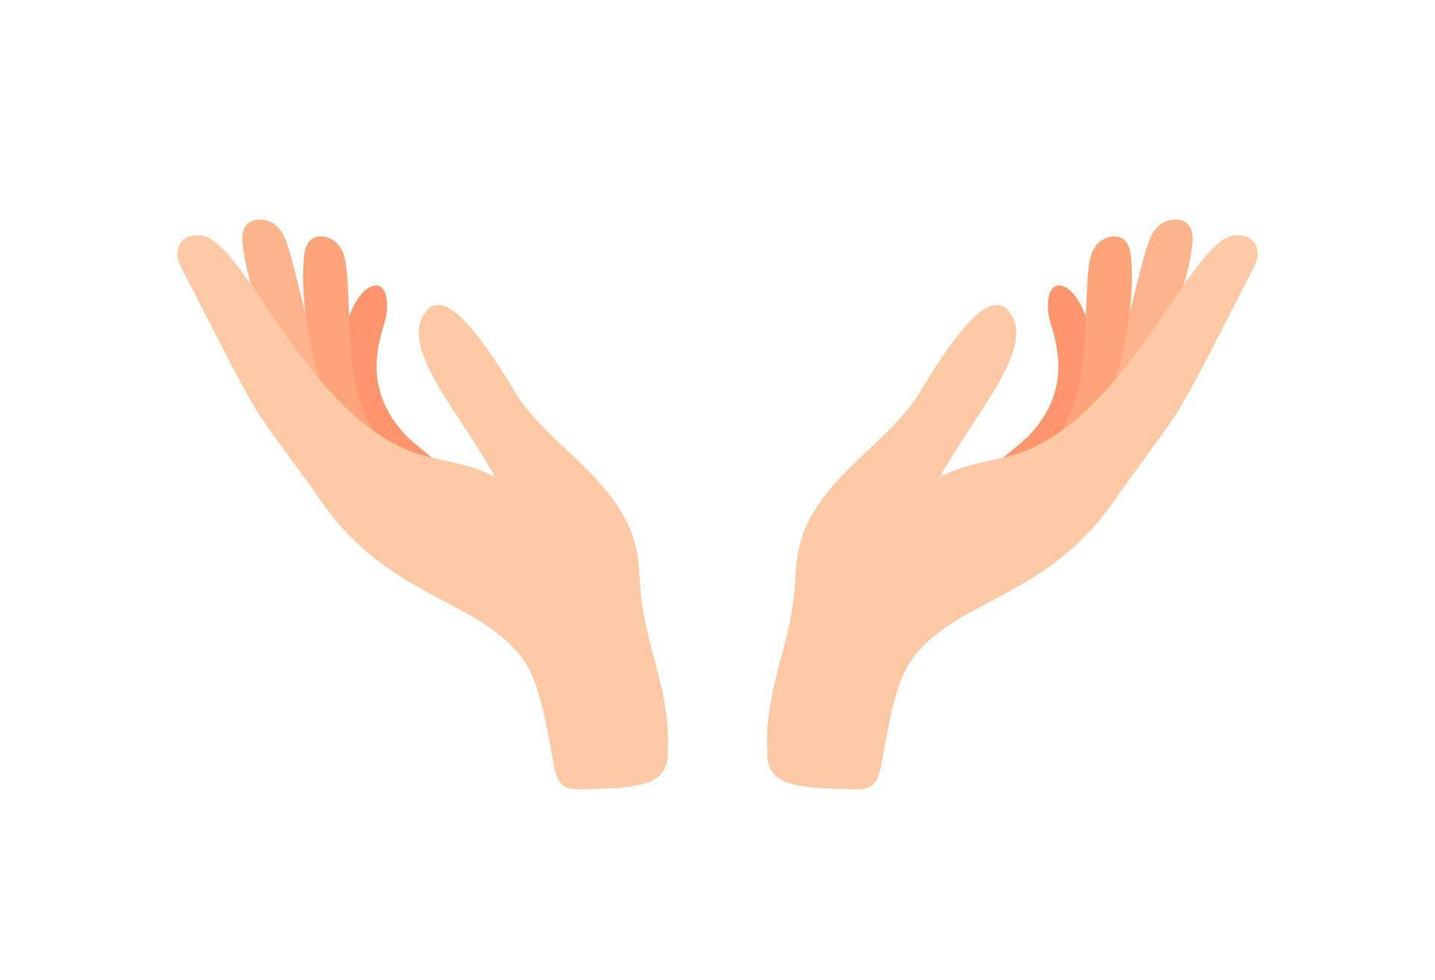 hacia arriba ilustración de vector de manos de mujer aislado sobre fondo blanco. icono de gesto de mano de apoyo, paz, cuidado. palma abierta femenina para obtener o recibir algo gesto, sosteniendo, mostrando